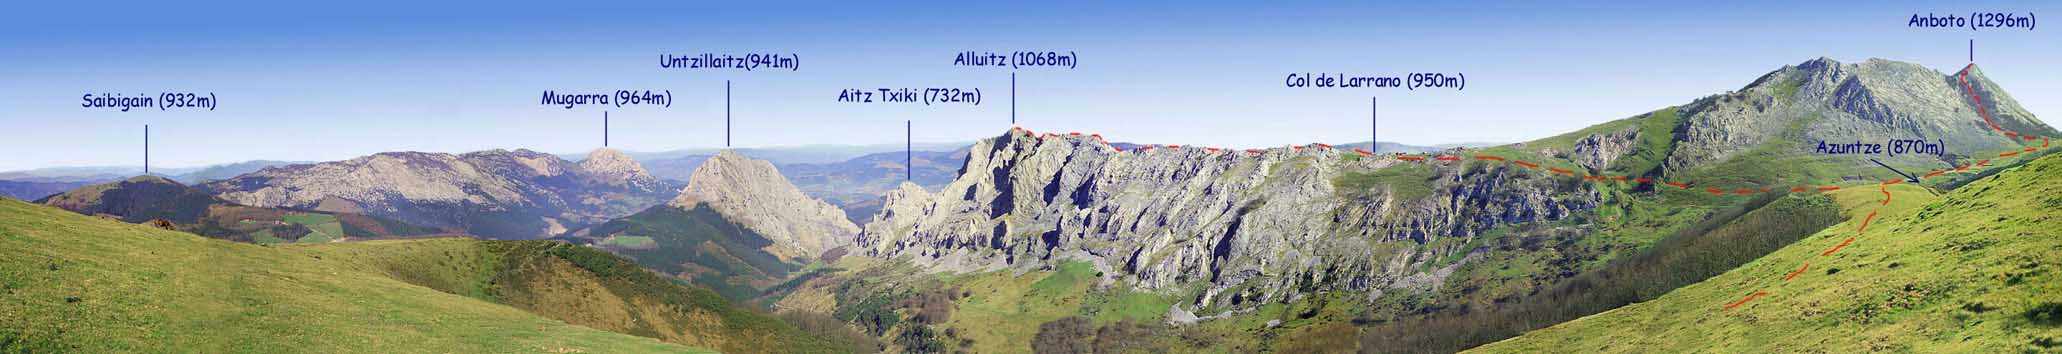 Vue panoramique de l'itinéraire sur la base d'une photo récupérée sur un site dont le sujet est 'le Parc Naturel d'Urkiola".